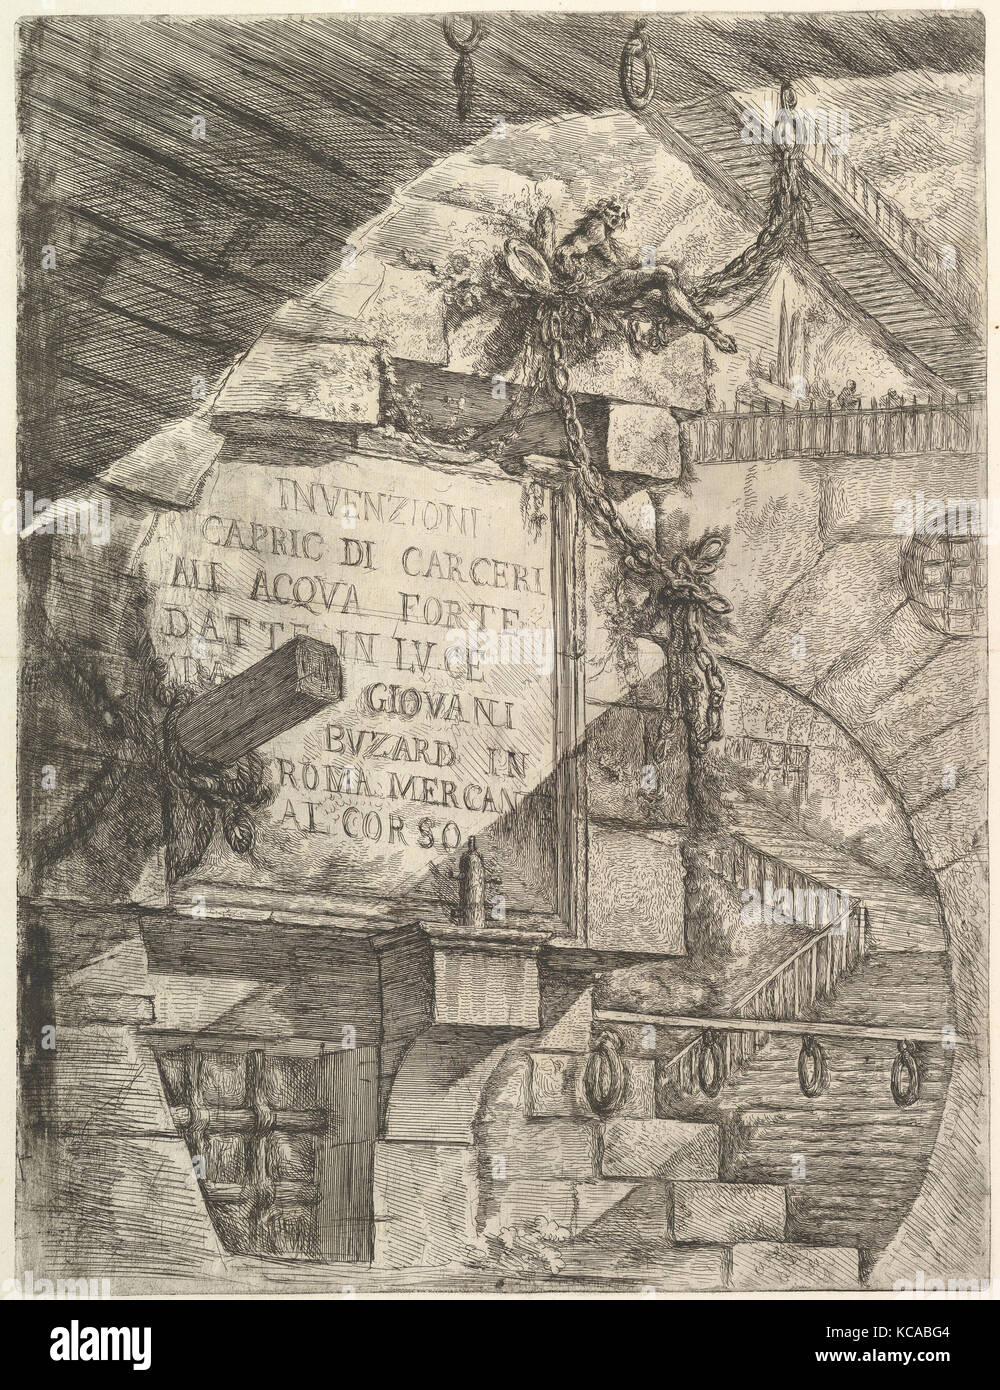 Title Page, from Carceri d'invenzione (Imaginary Prisons), Giovanni Battista Piranesi, ca. 1749–50 Stock Photo